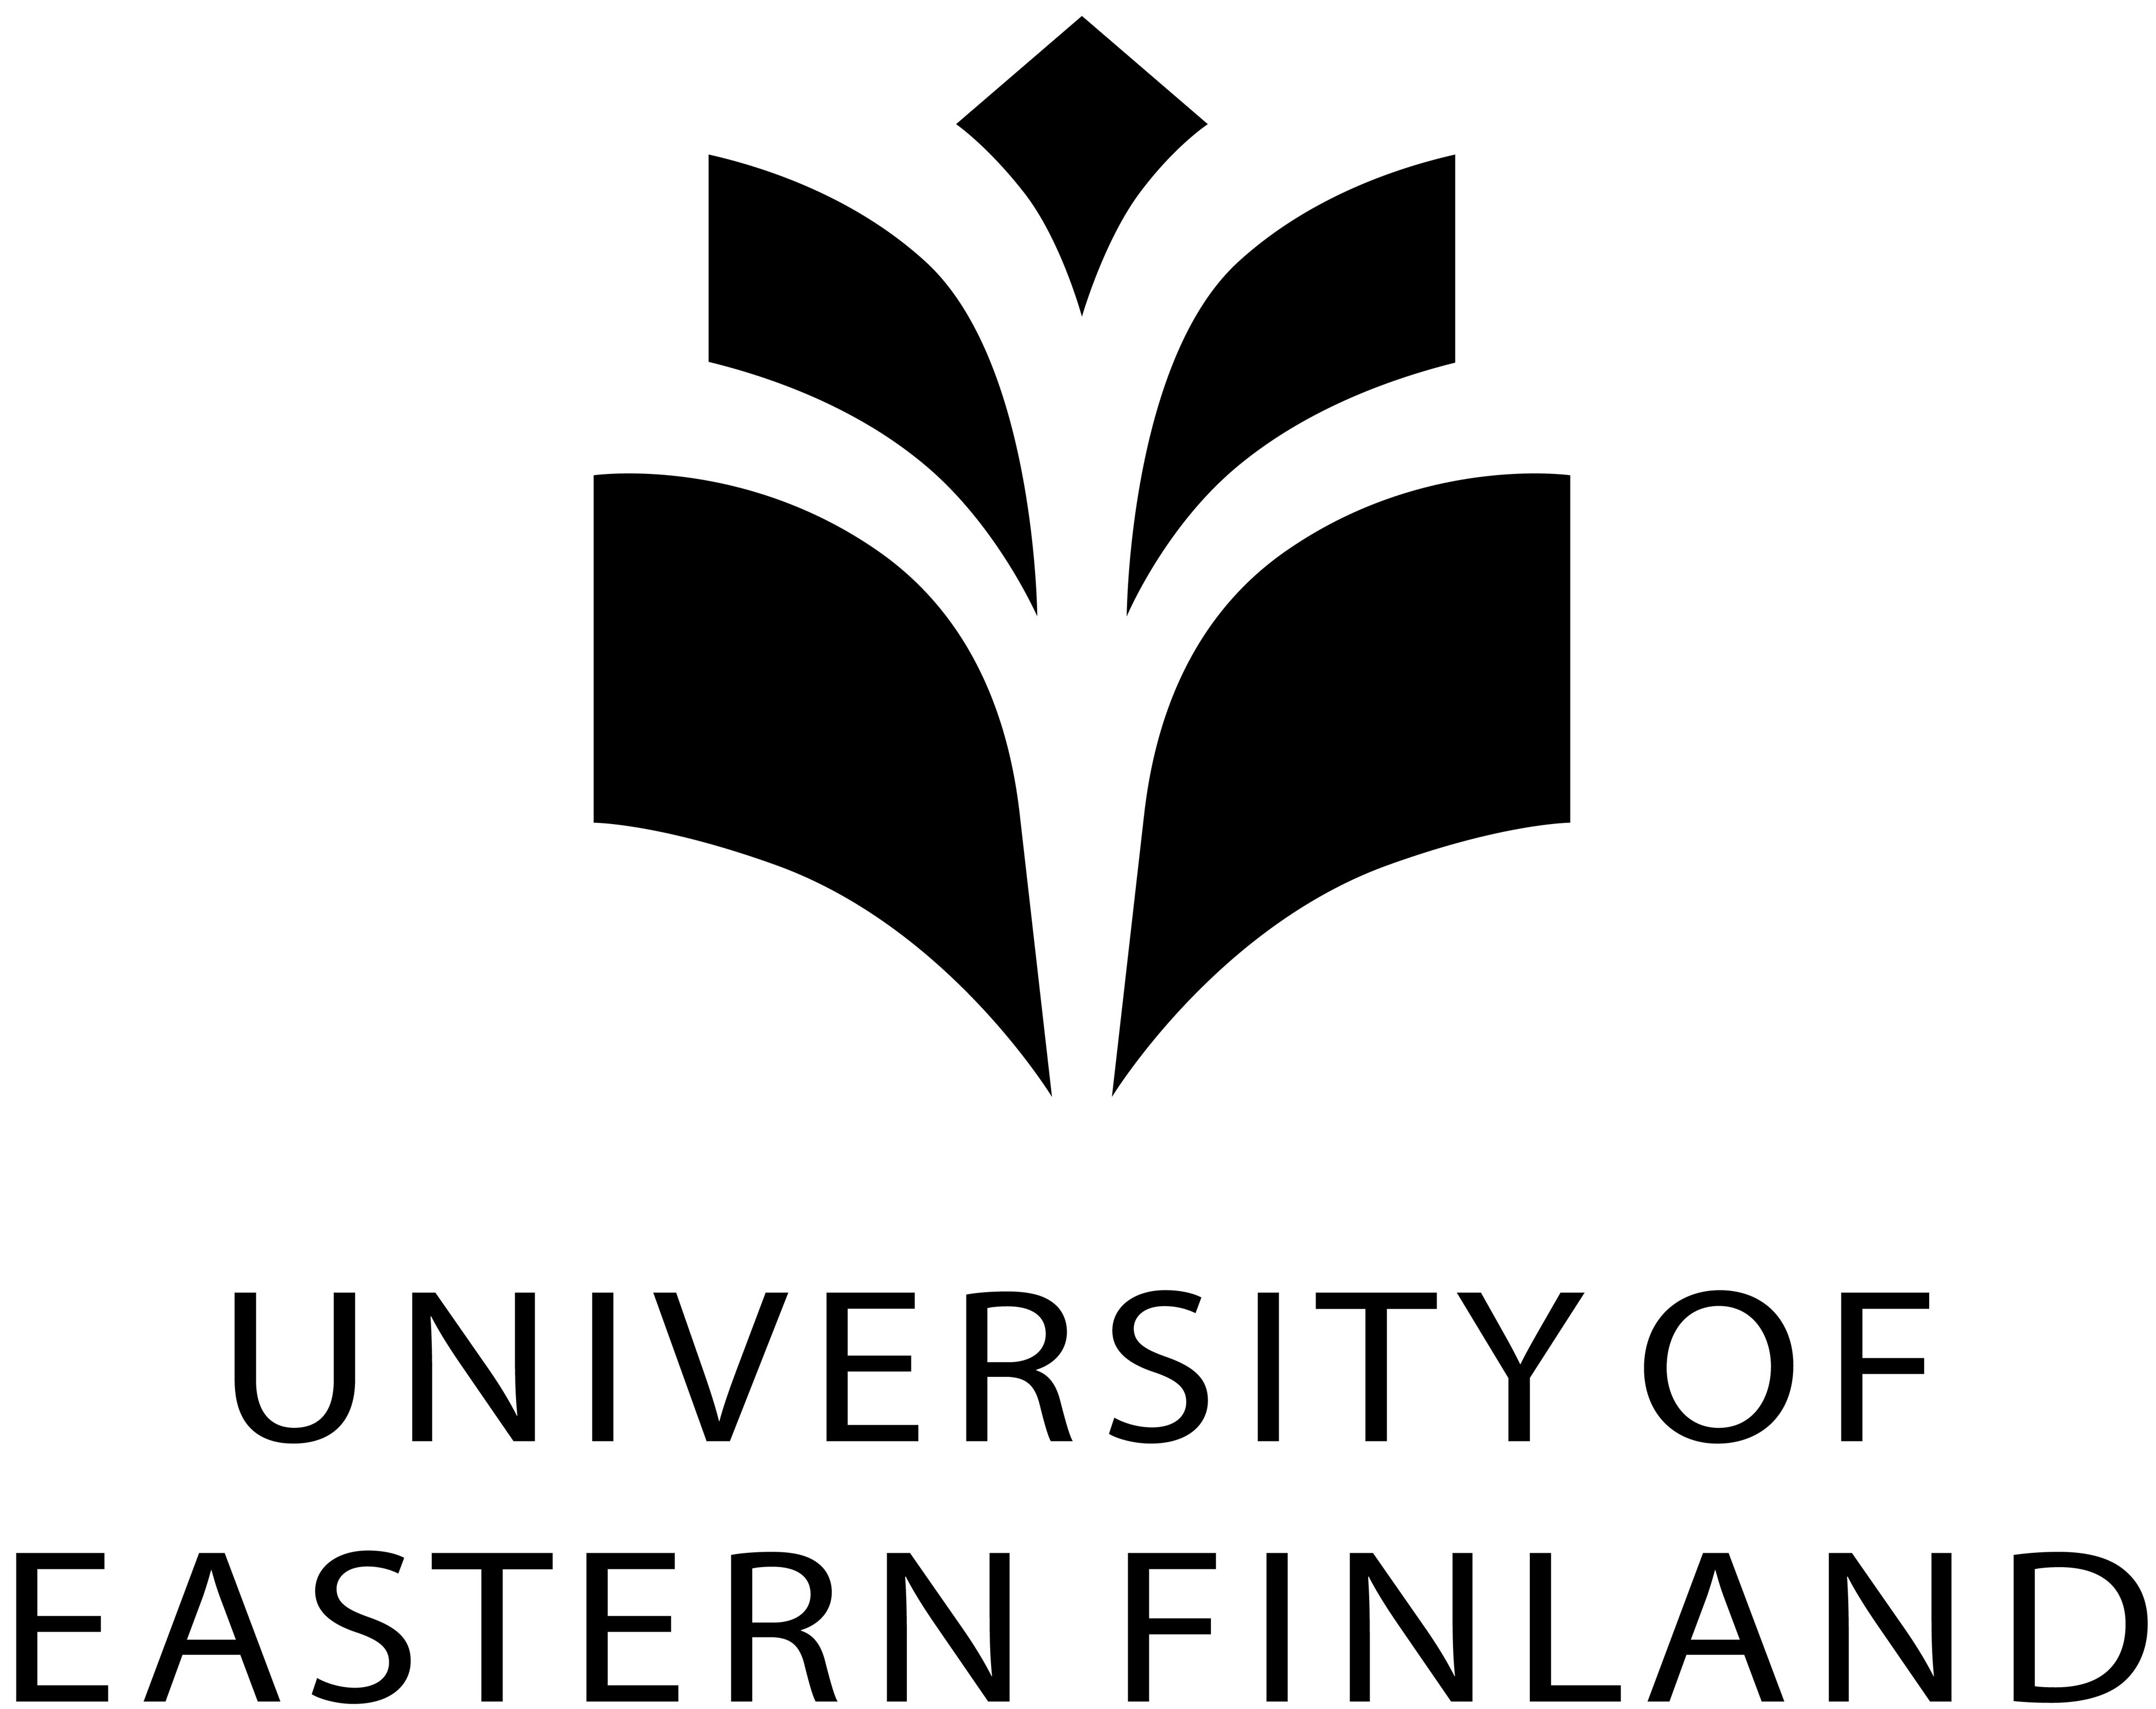 Itä-Suomen yliopisto logo